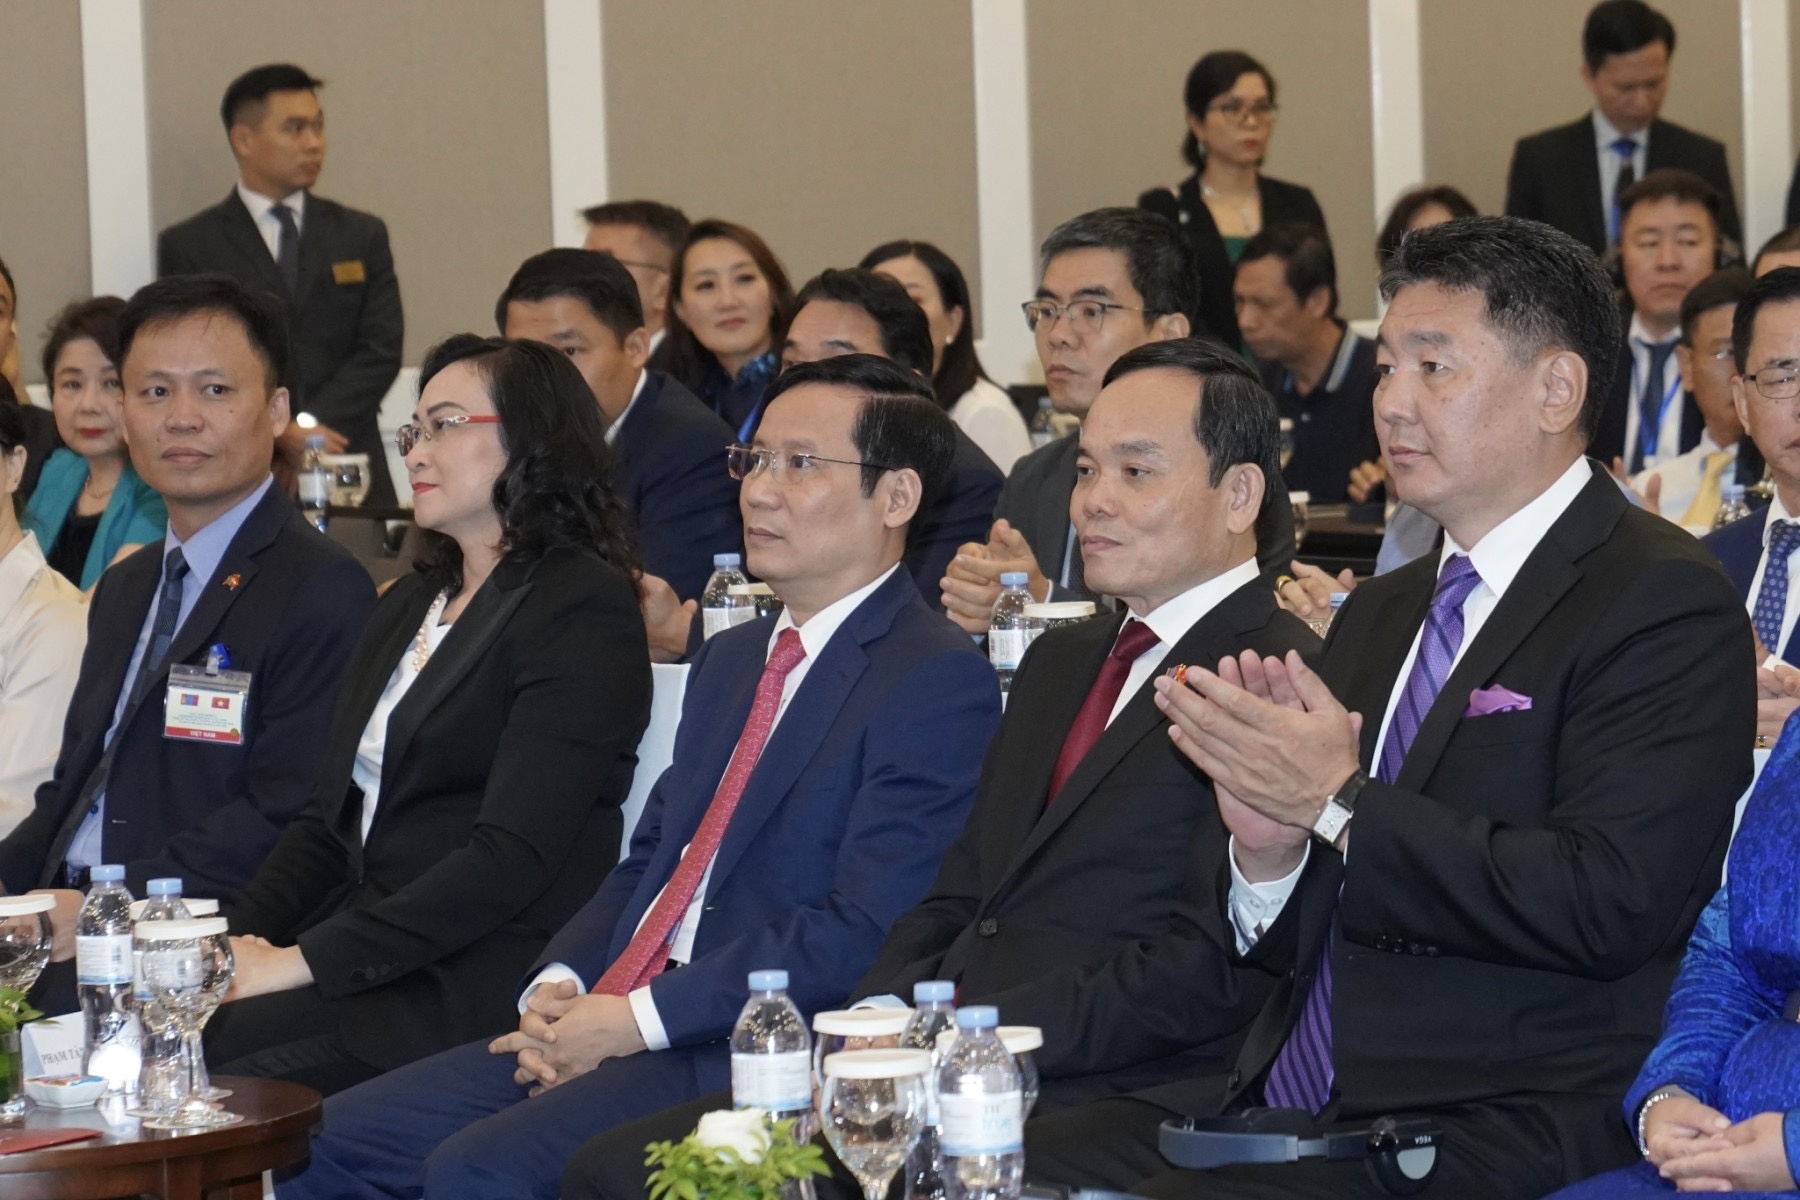 Lễ công bố đường bay mới của Vietjet diễn ra trong khuôn khổ Diễn đàn Doanh nghiệp Việt Nam - Mông Cổ nhân chuyến thăm Việt Nam của Tổng thống Mông Cổ Ukhnaagiin Khurelsukh